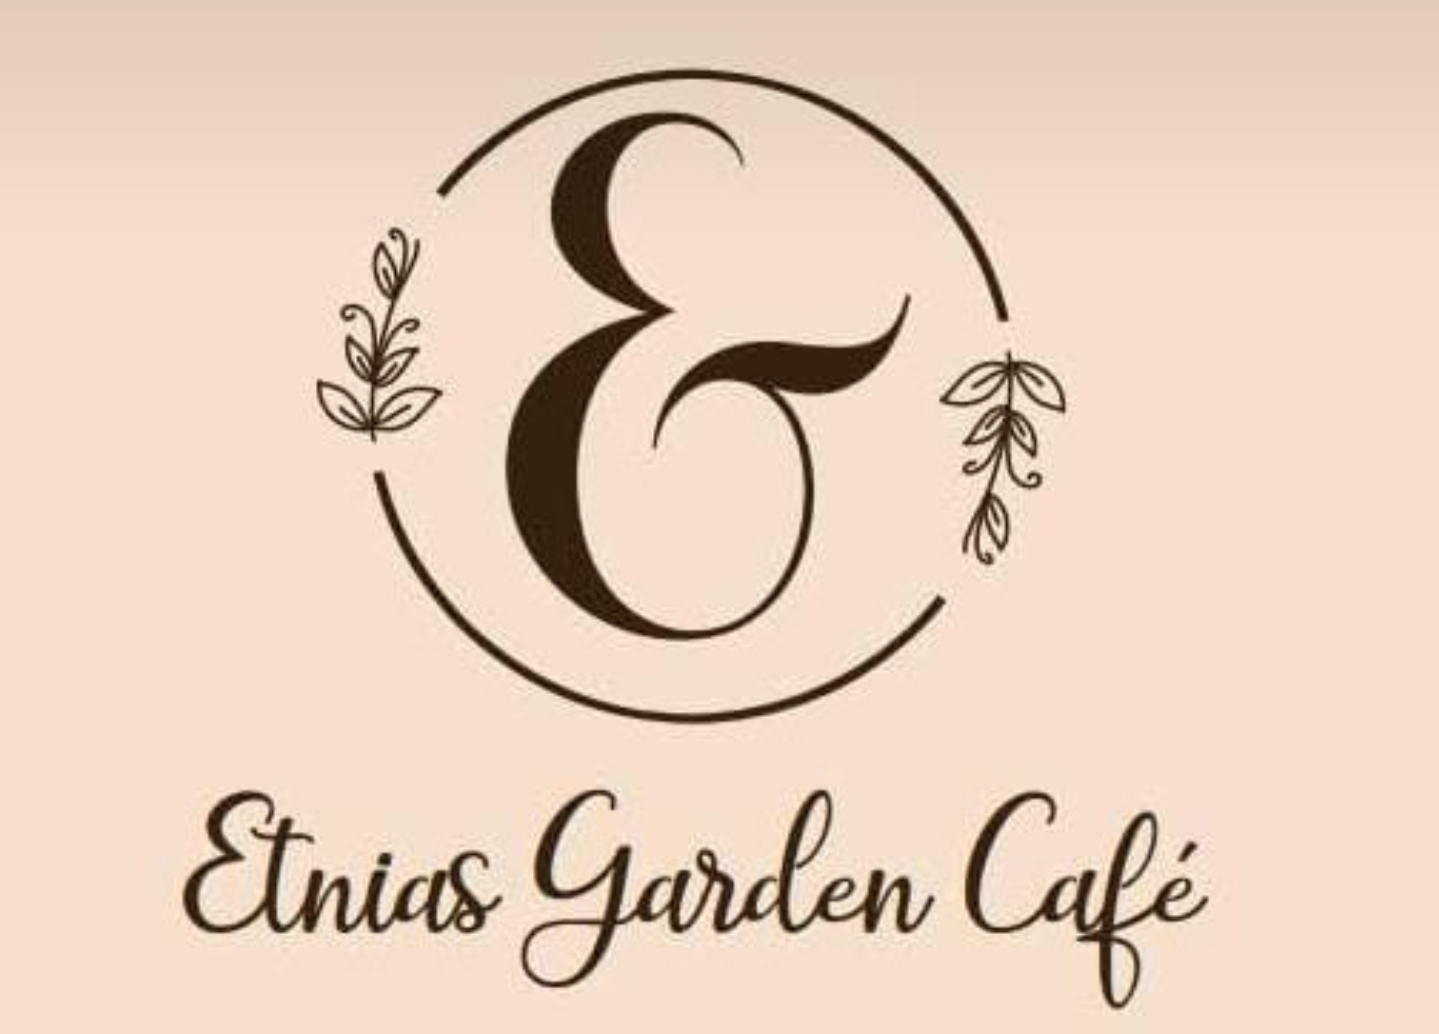 Etnias Garden Café